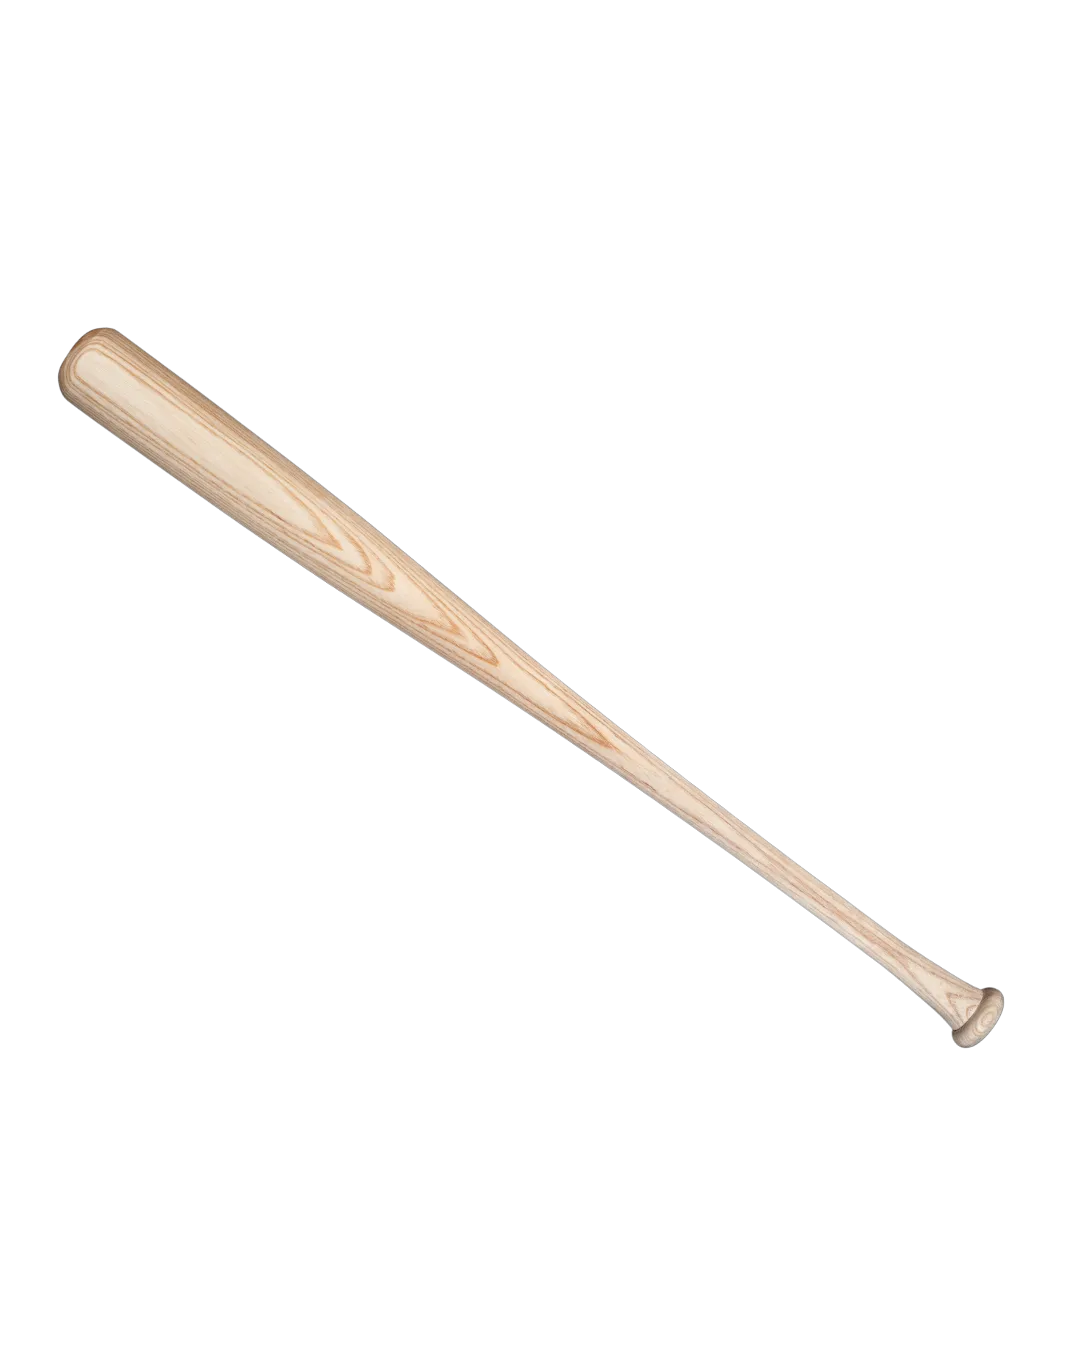 A wooden baseball bat